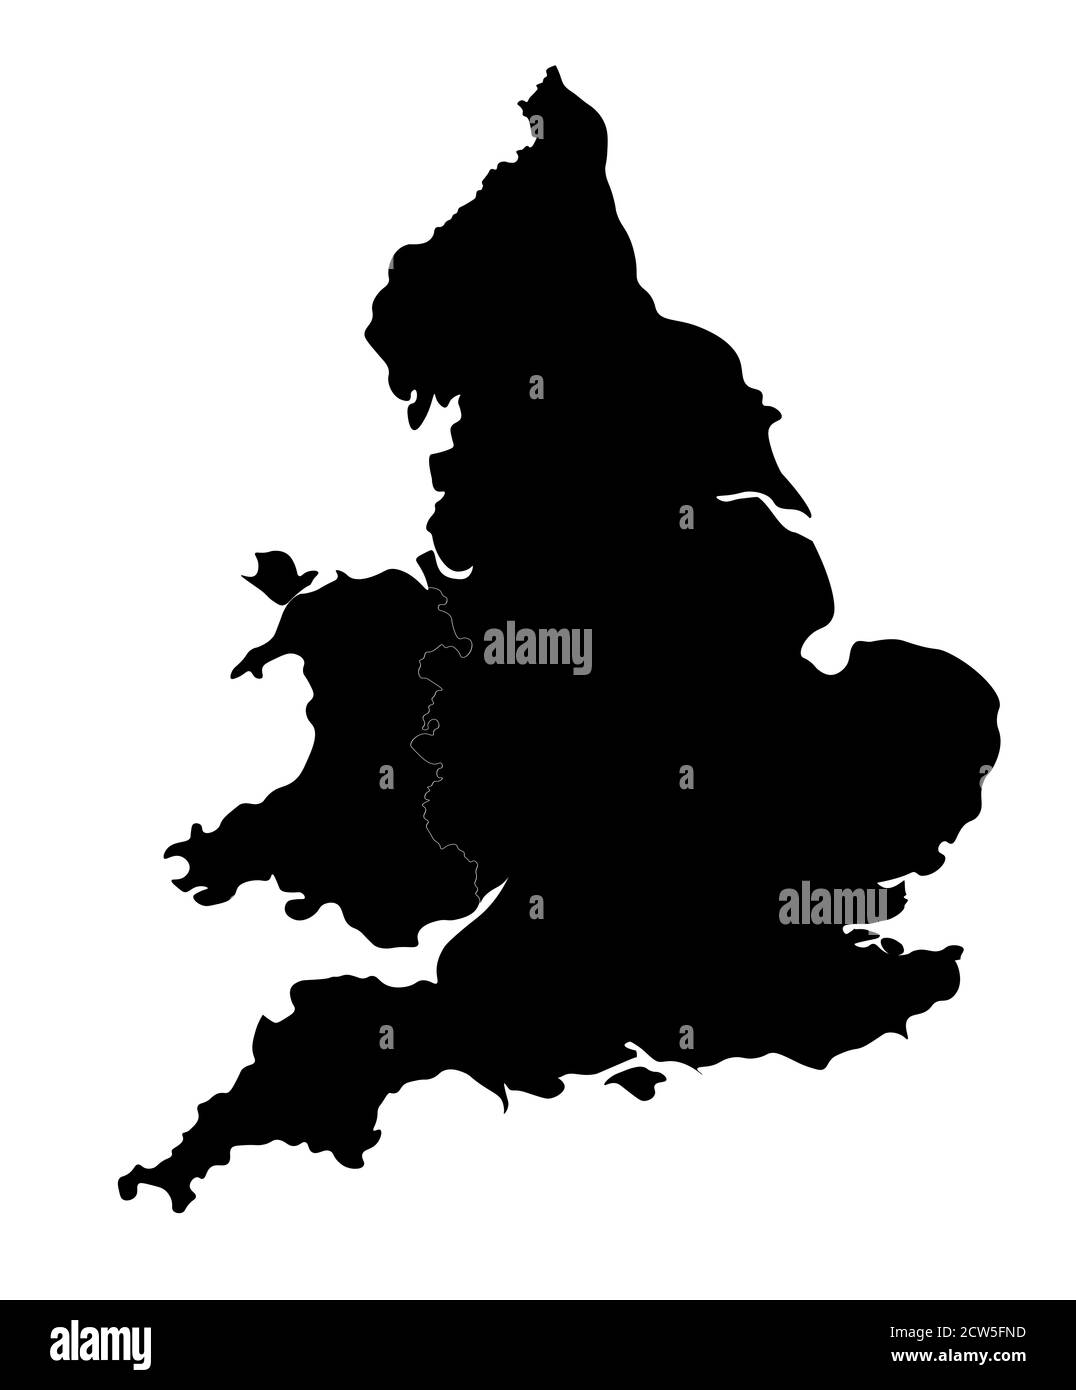 England und Wales Silhouette. Formschöne Karte mit abgerundeten Kanten für einen eleganten Look. Stockfoto